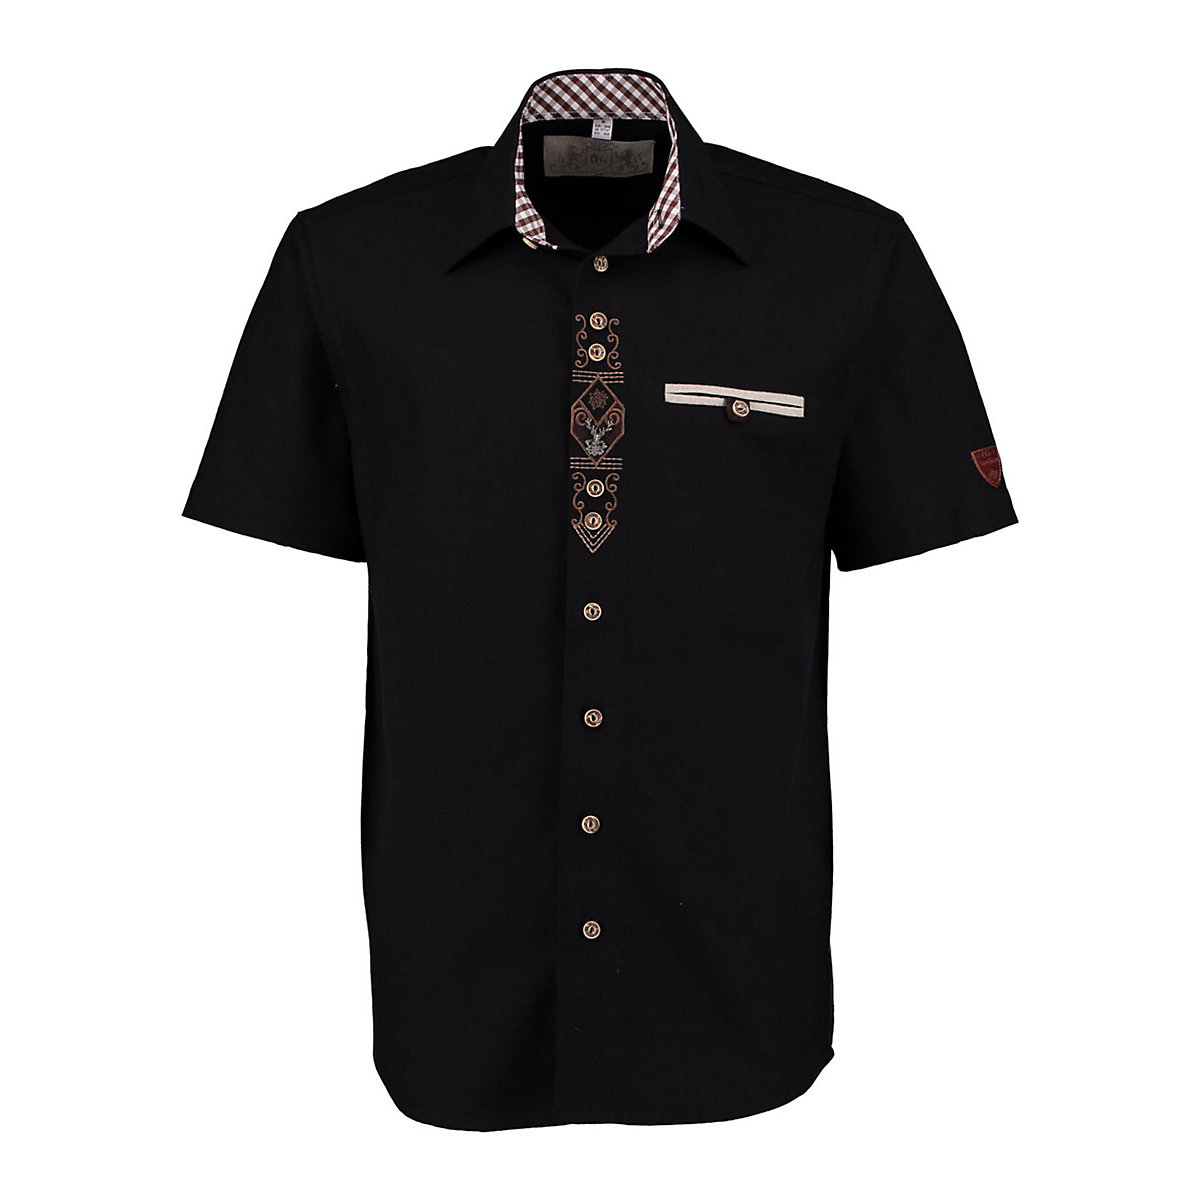 OS Trachten Herren Kurzarm Trachtenhemd mit Edelweiß-Stickerei auf der Knopfleiste Amima schwarz